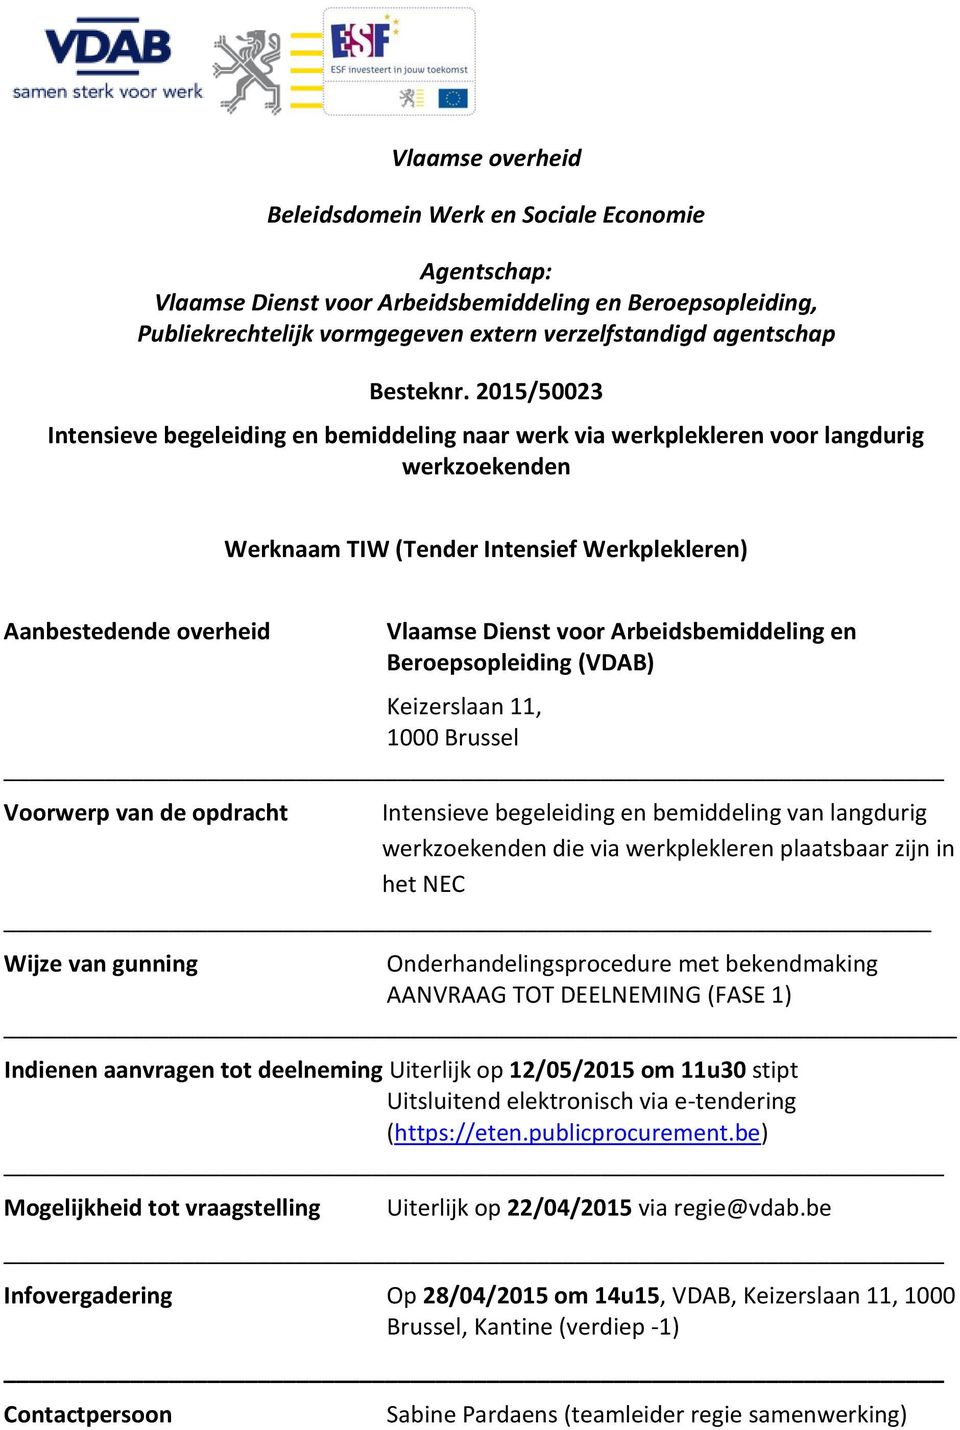 Arbeidsbemiddeling en Beroepsopleiding (VDAB) Keizerslaan 11, 1000 Brussel Voorwerp van de opdracht Intensieve begeleiding en bemiddeling van langdurig werkzoekenden die via werkplekleren plaatsbaar